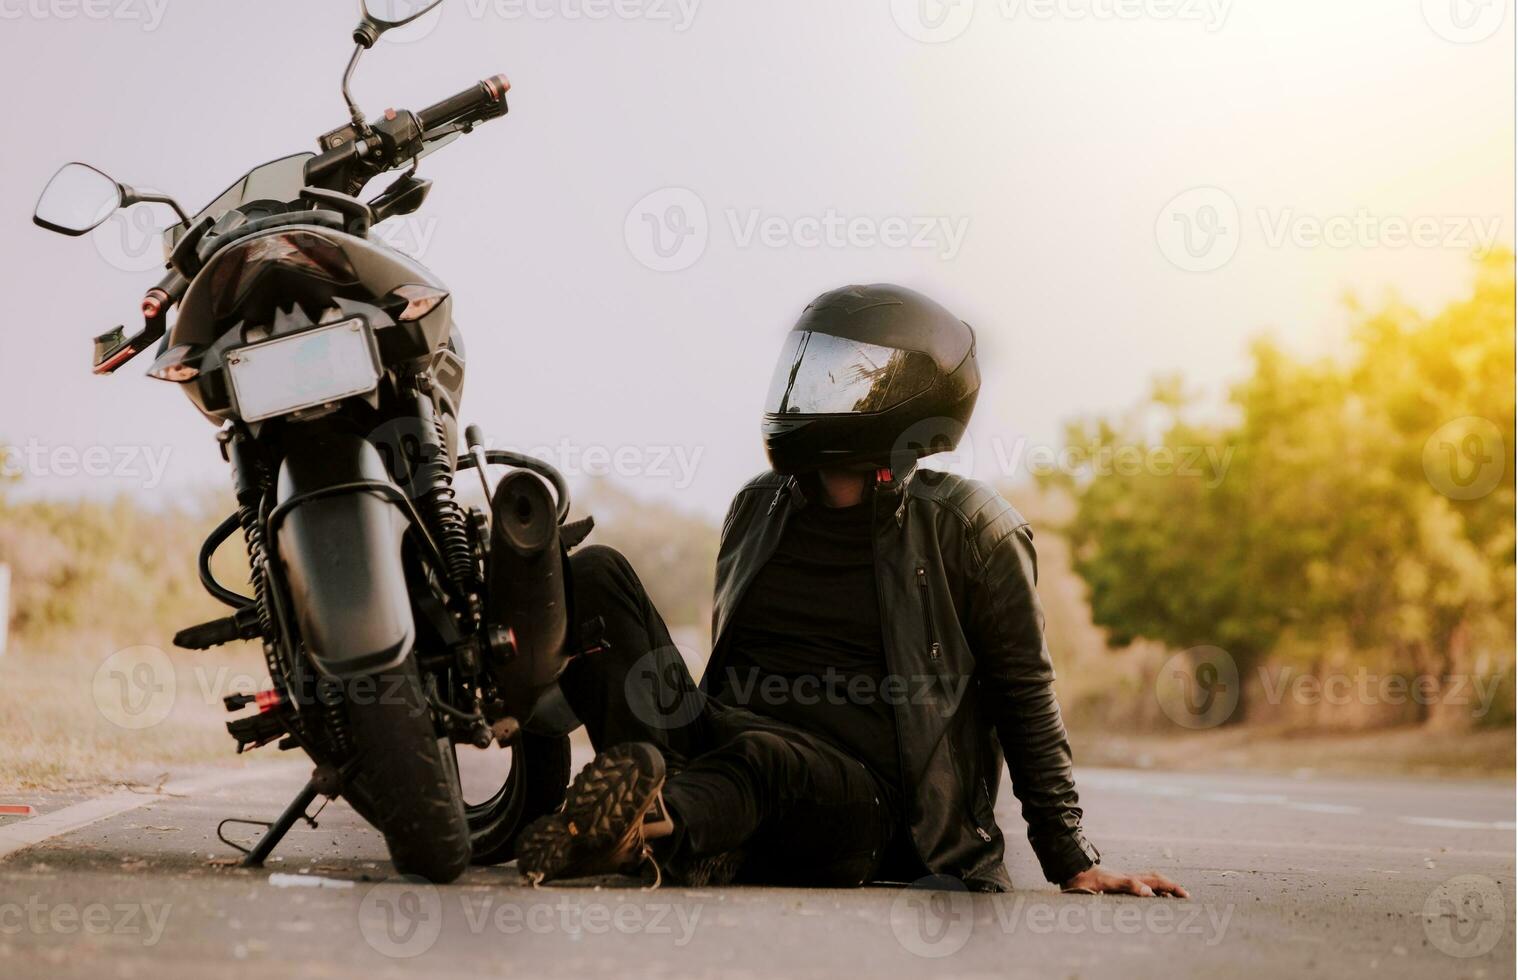 motocycliste séance suivant à le sien moto. motocycliste séance et penché sur le sien moto sur le asphalte photo